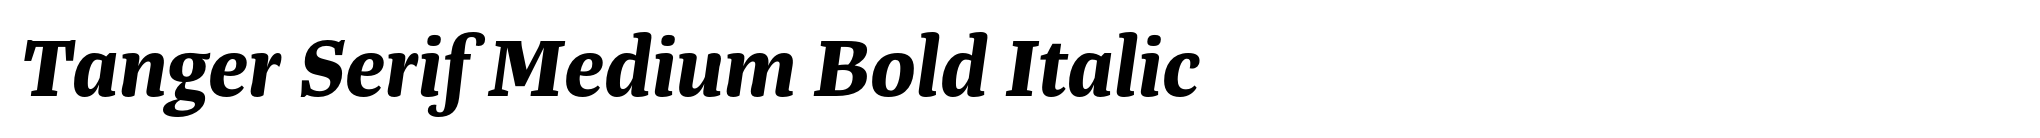 Tanger Serif Medium Bold Italic image